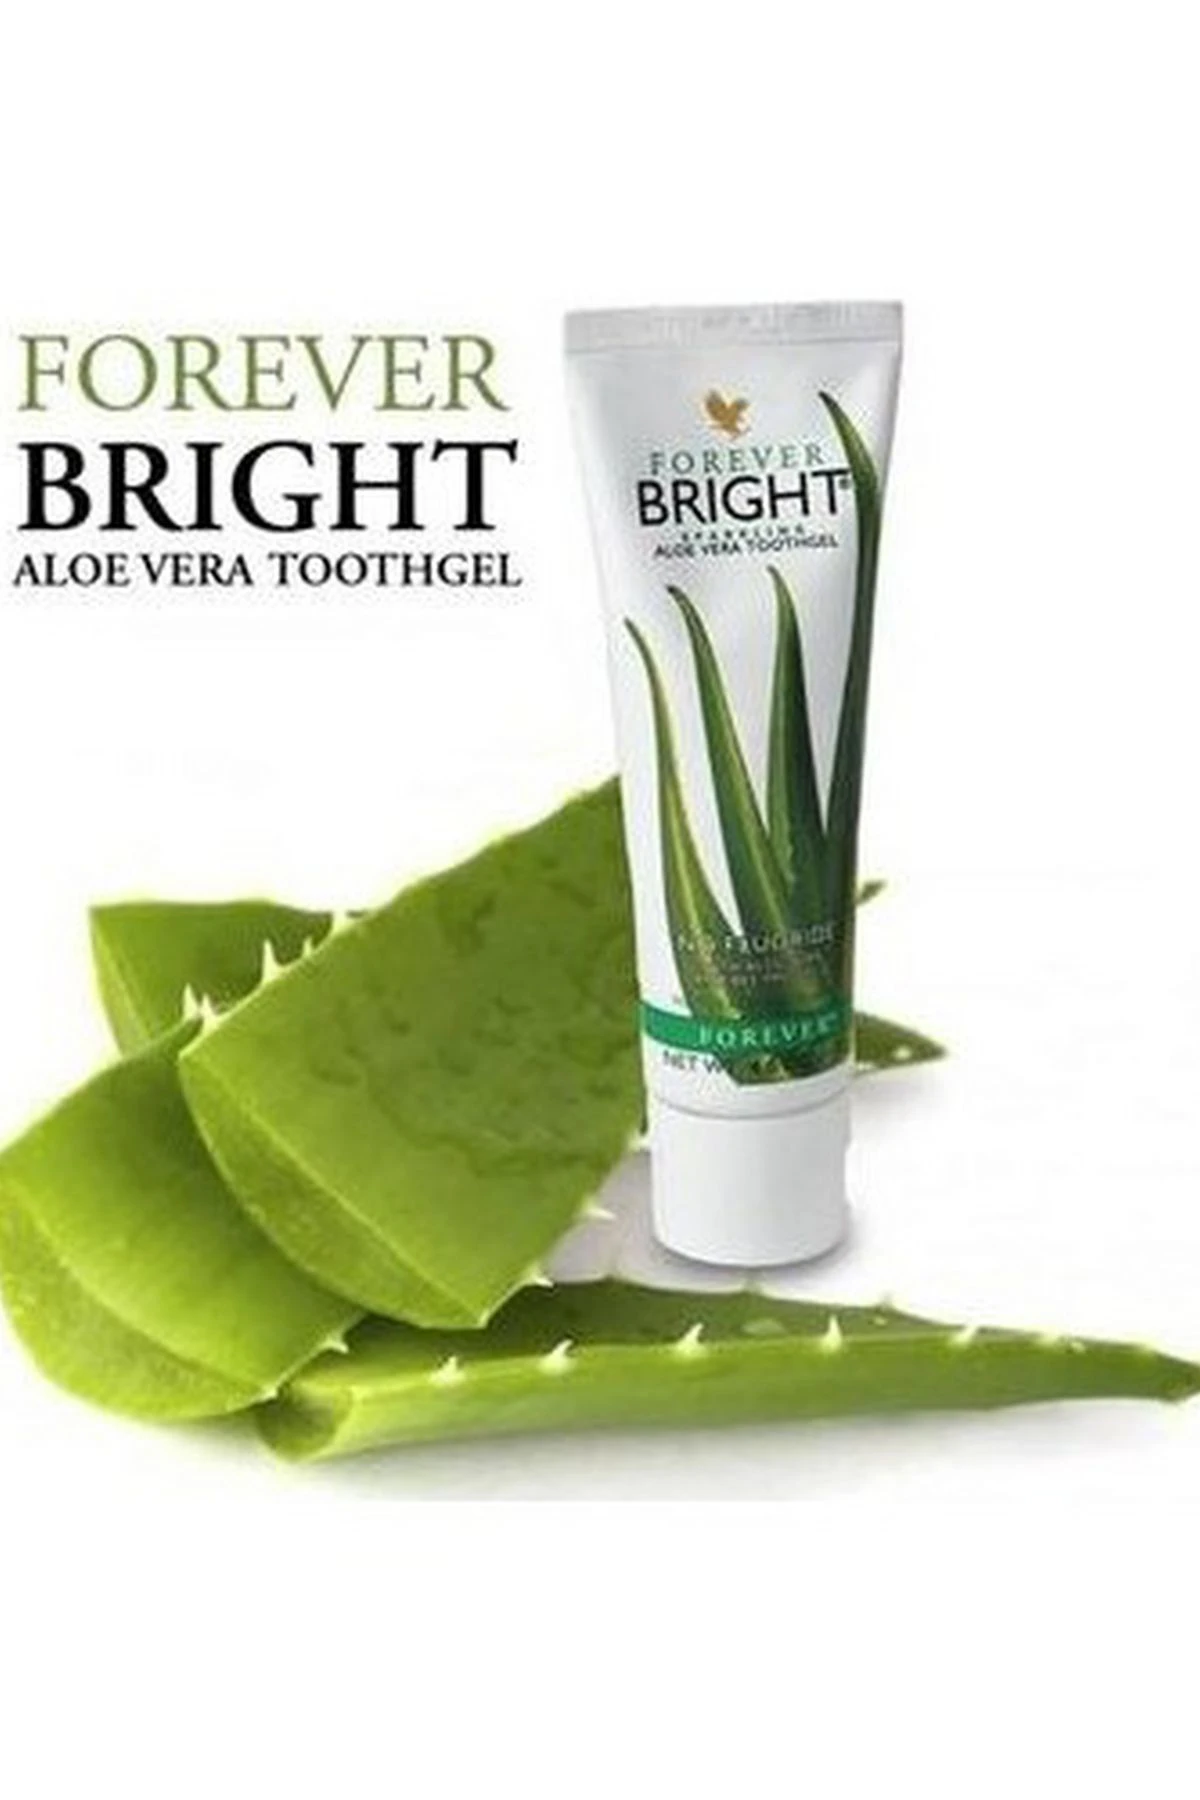 Forever Living pasta de dientes en gel brillante, gracias a su contenido de Aloe  Vera y propóleos, puedes protegerlo y blanquearlo.|Pasta de dientes| -  AliExpress